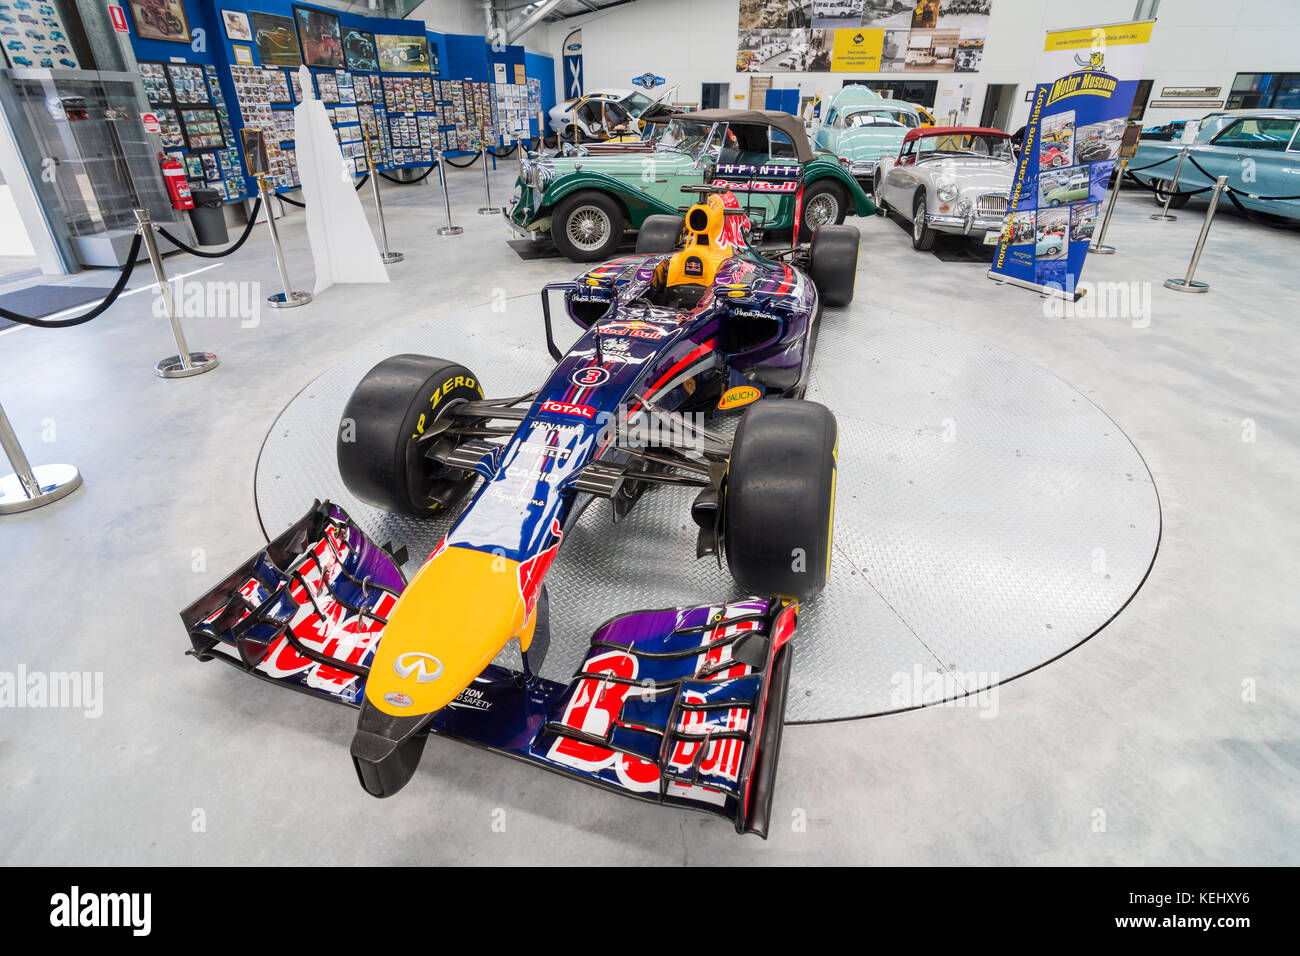 Daniel Ricciardo's Red Bull voiture de course de Formule 1 à l'affiche au Musée du moteur de WA, Whiteman Park dans la Swan Valley, Perth, Australie occidentale Banque D'Images